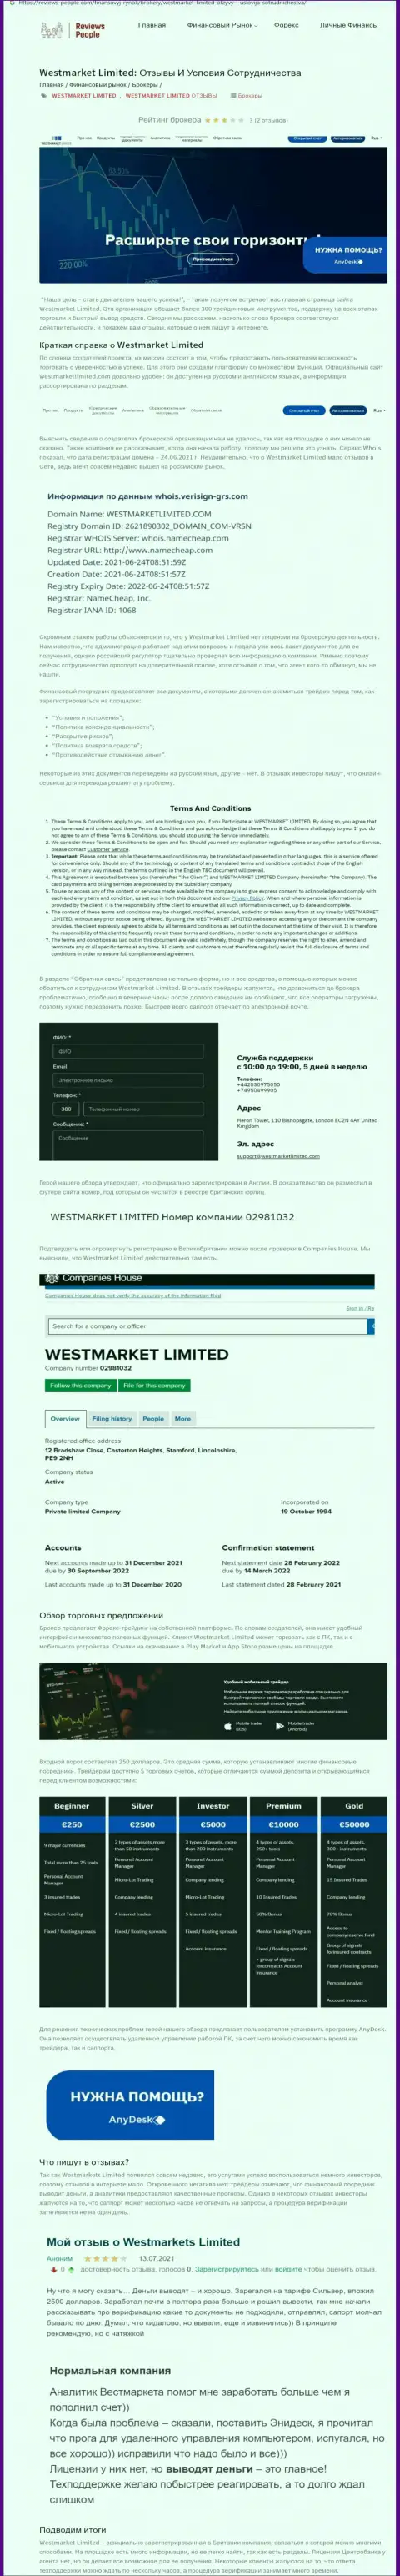 Статья о forex дилере West Market Limited на сайте Ревиевс Пеопле Ком